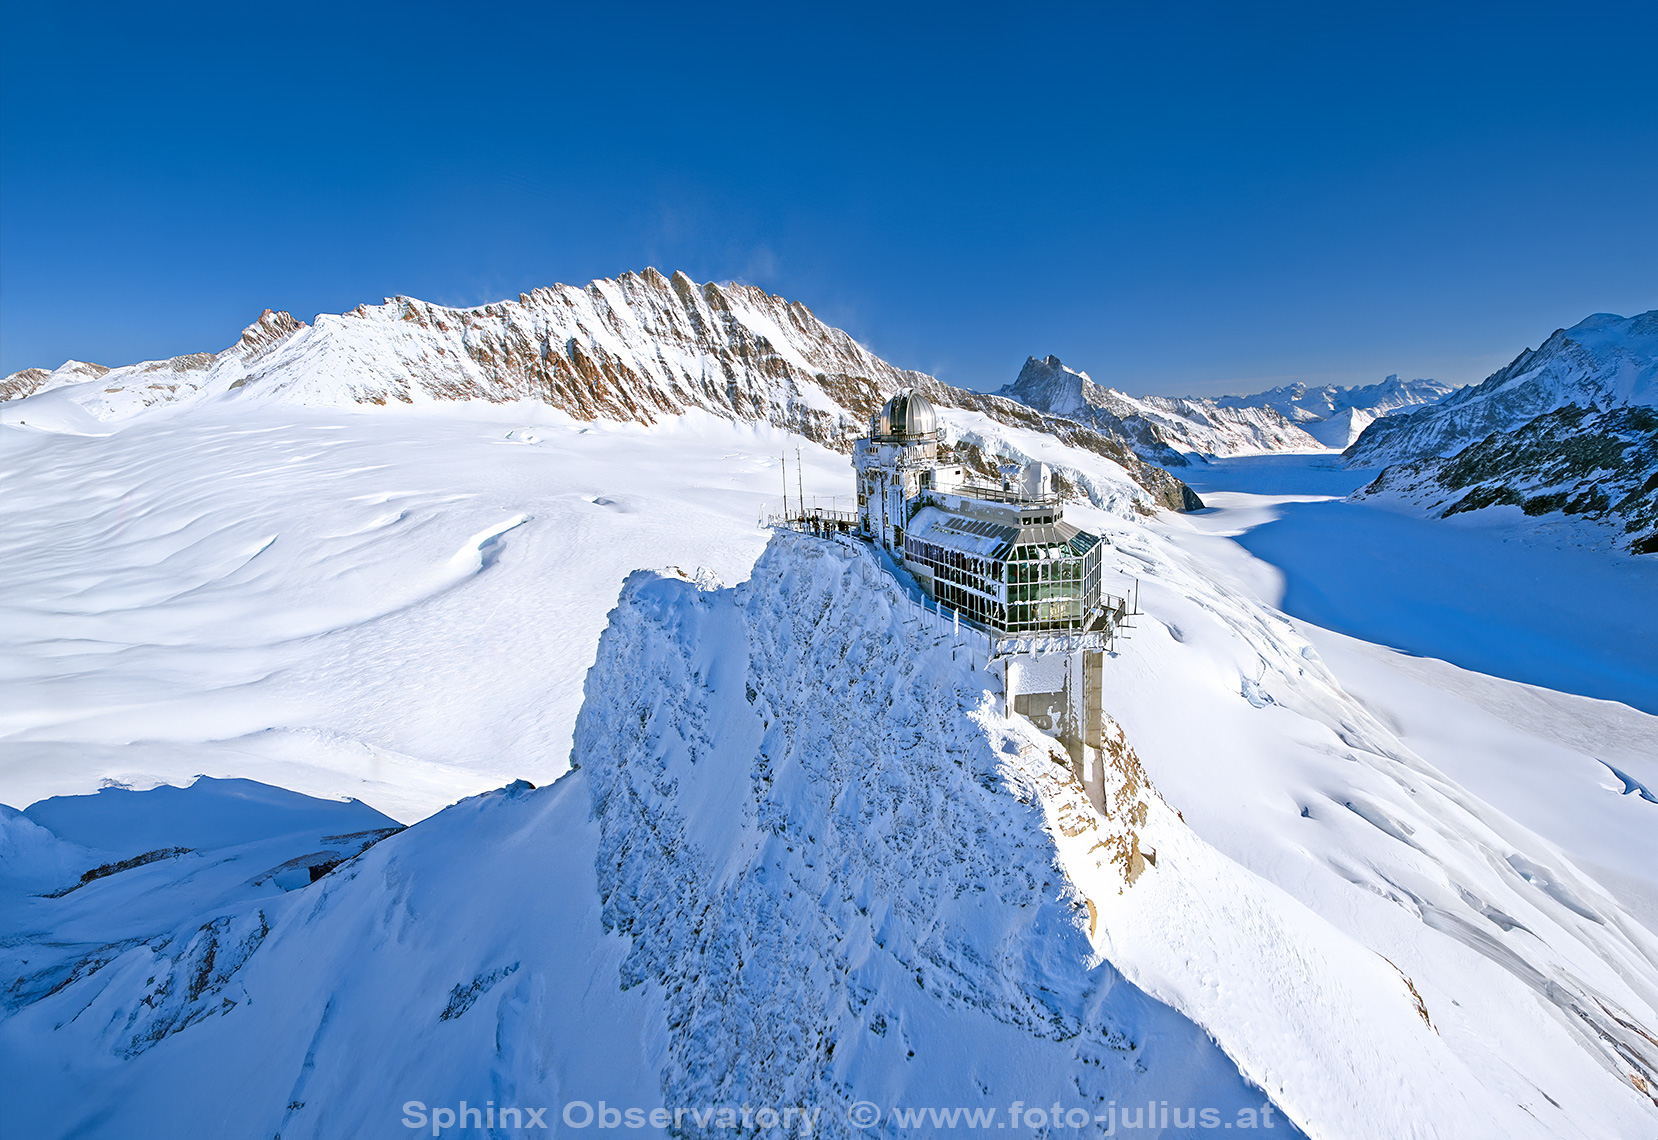 0933a_Jungfraujoch_Observatorium.jpg, 736kB